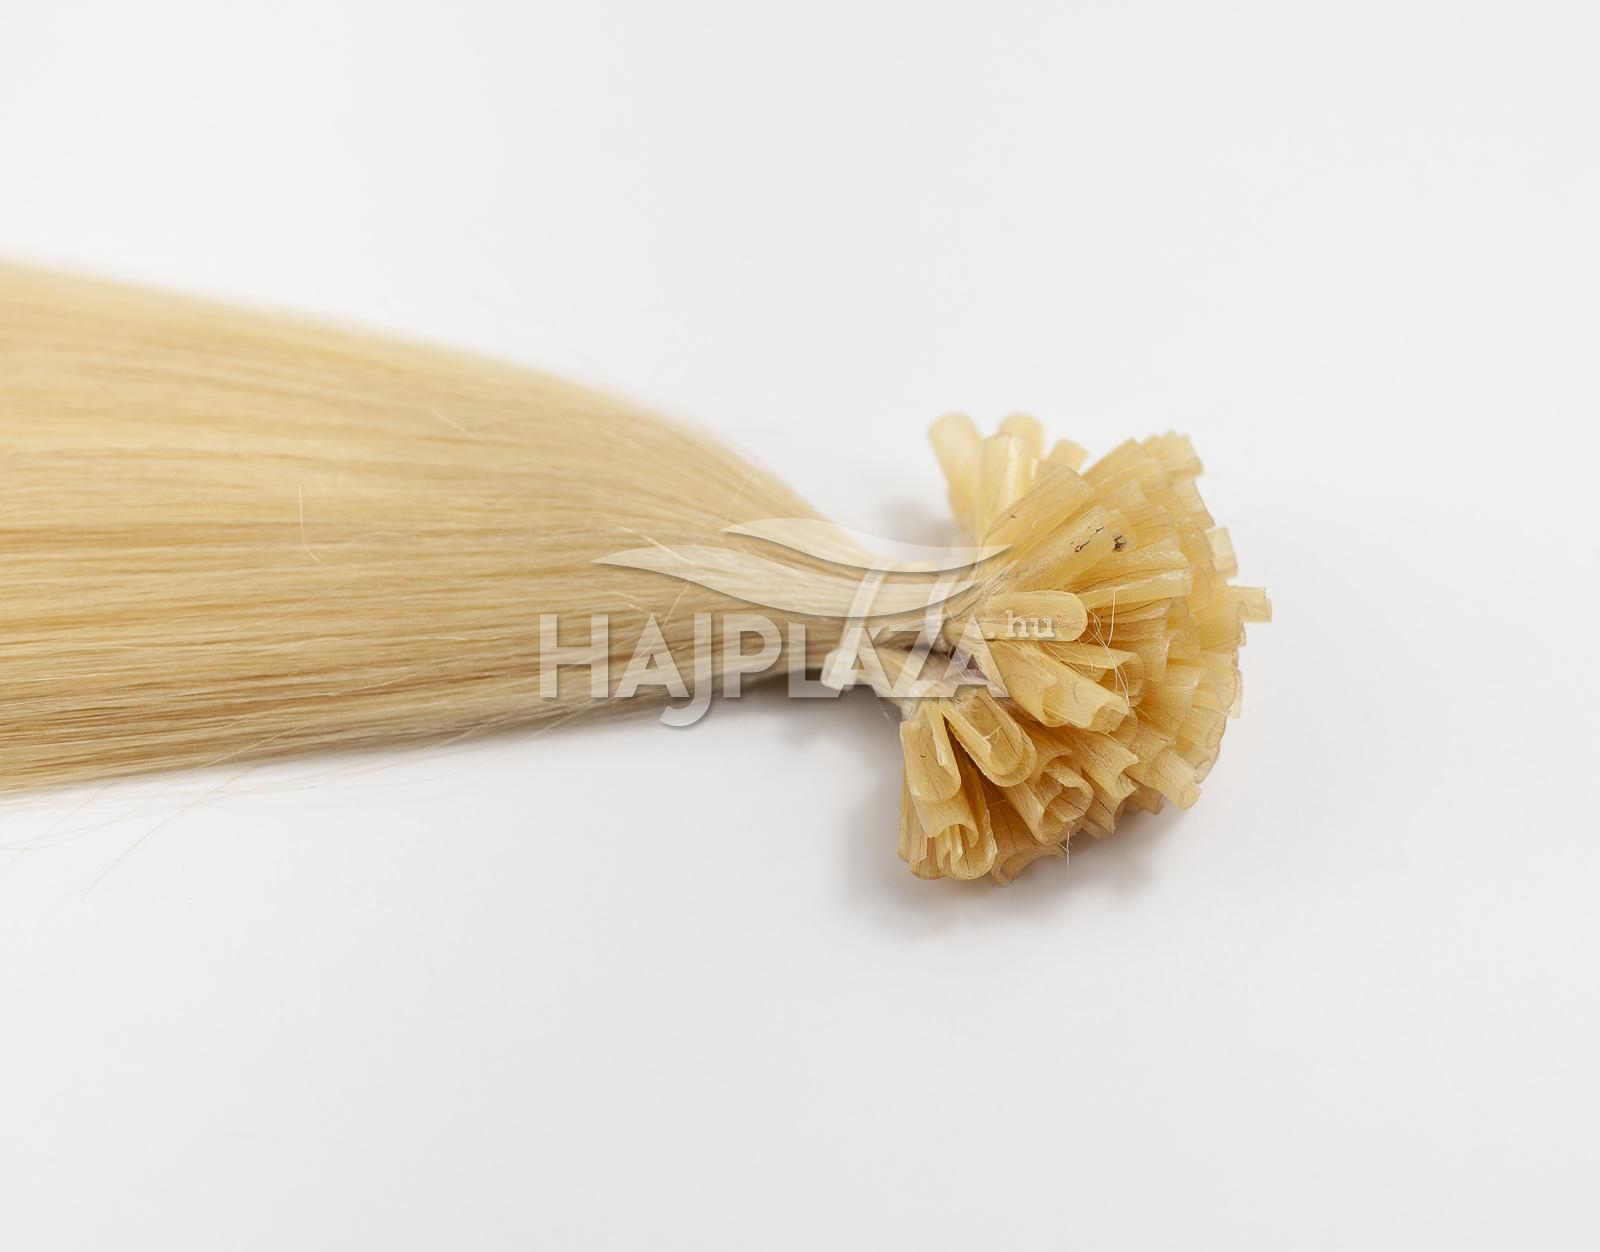 Festett világosszőke keratinos haj - 60-65 cm